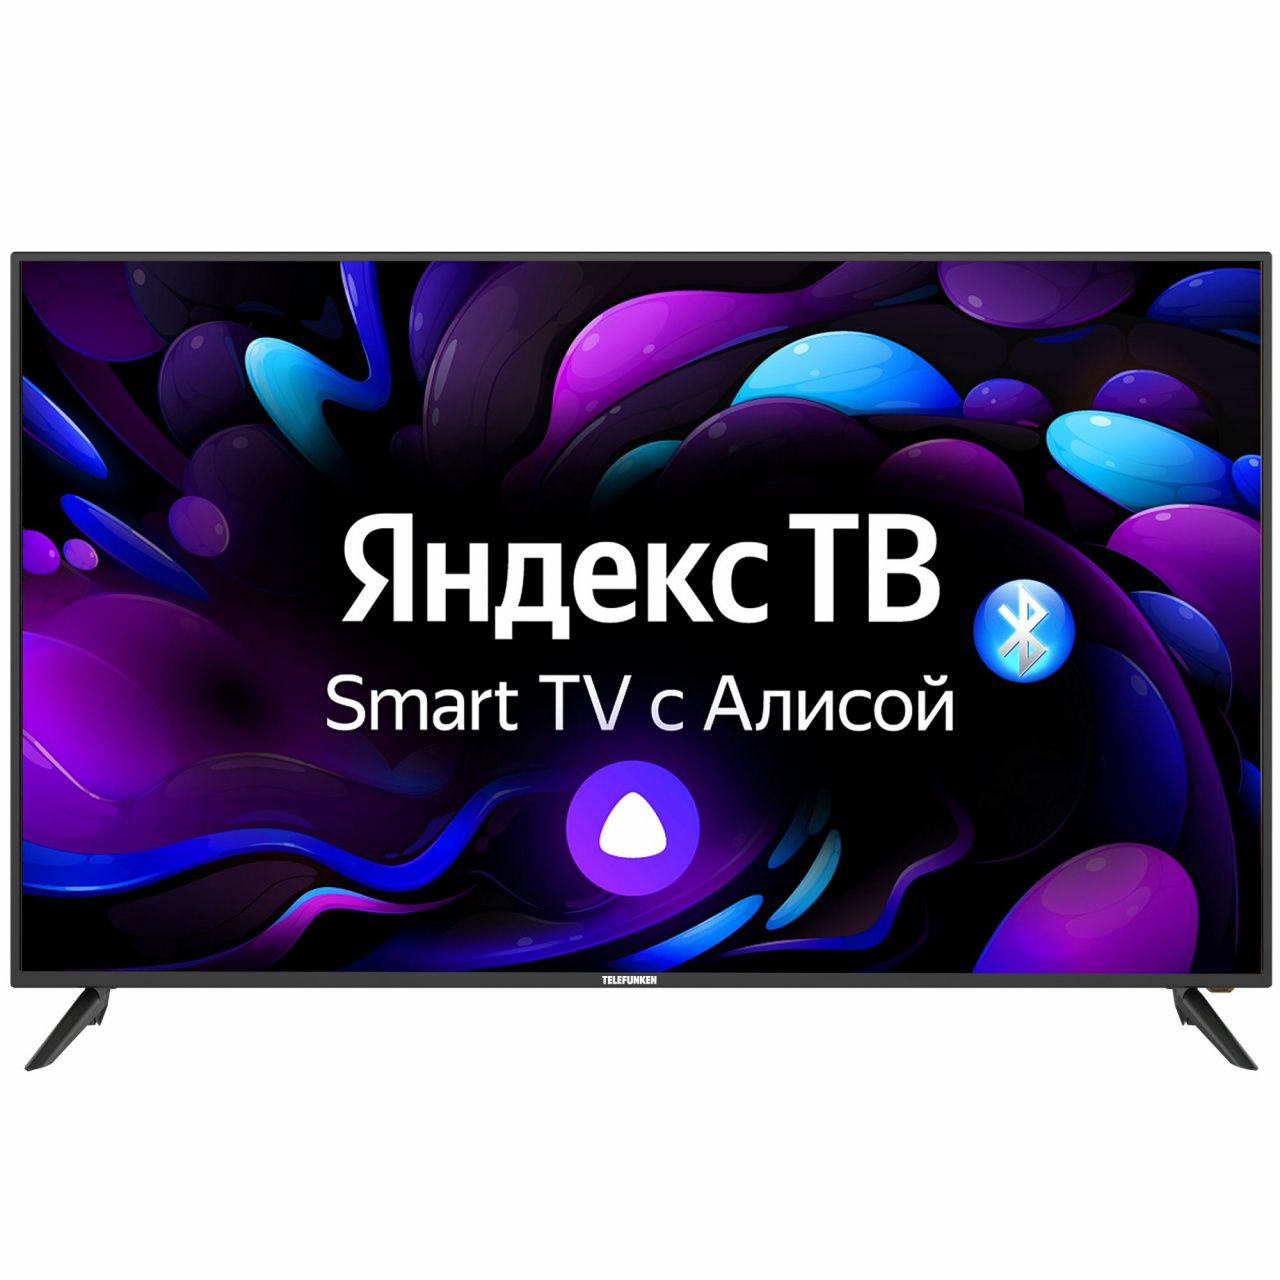 Телевизор с диагональю 40 дюймов купить в Минске